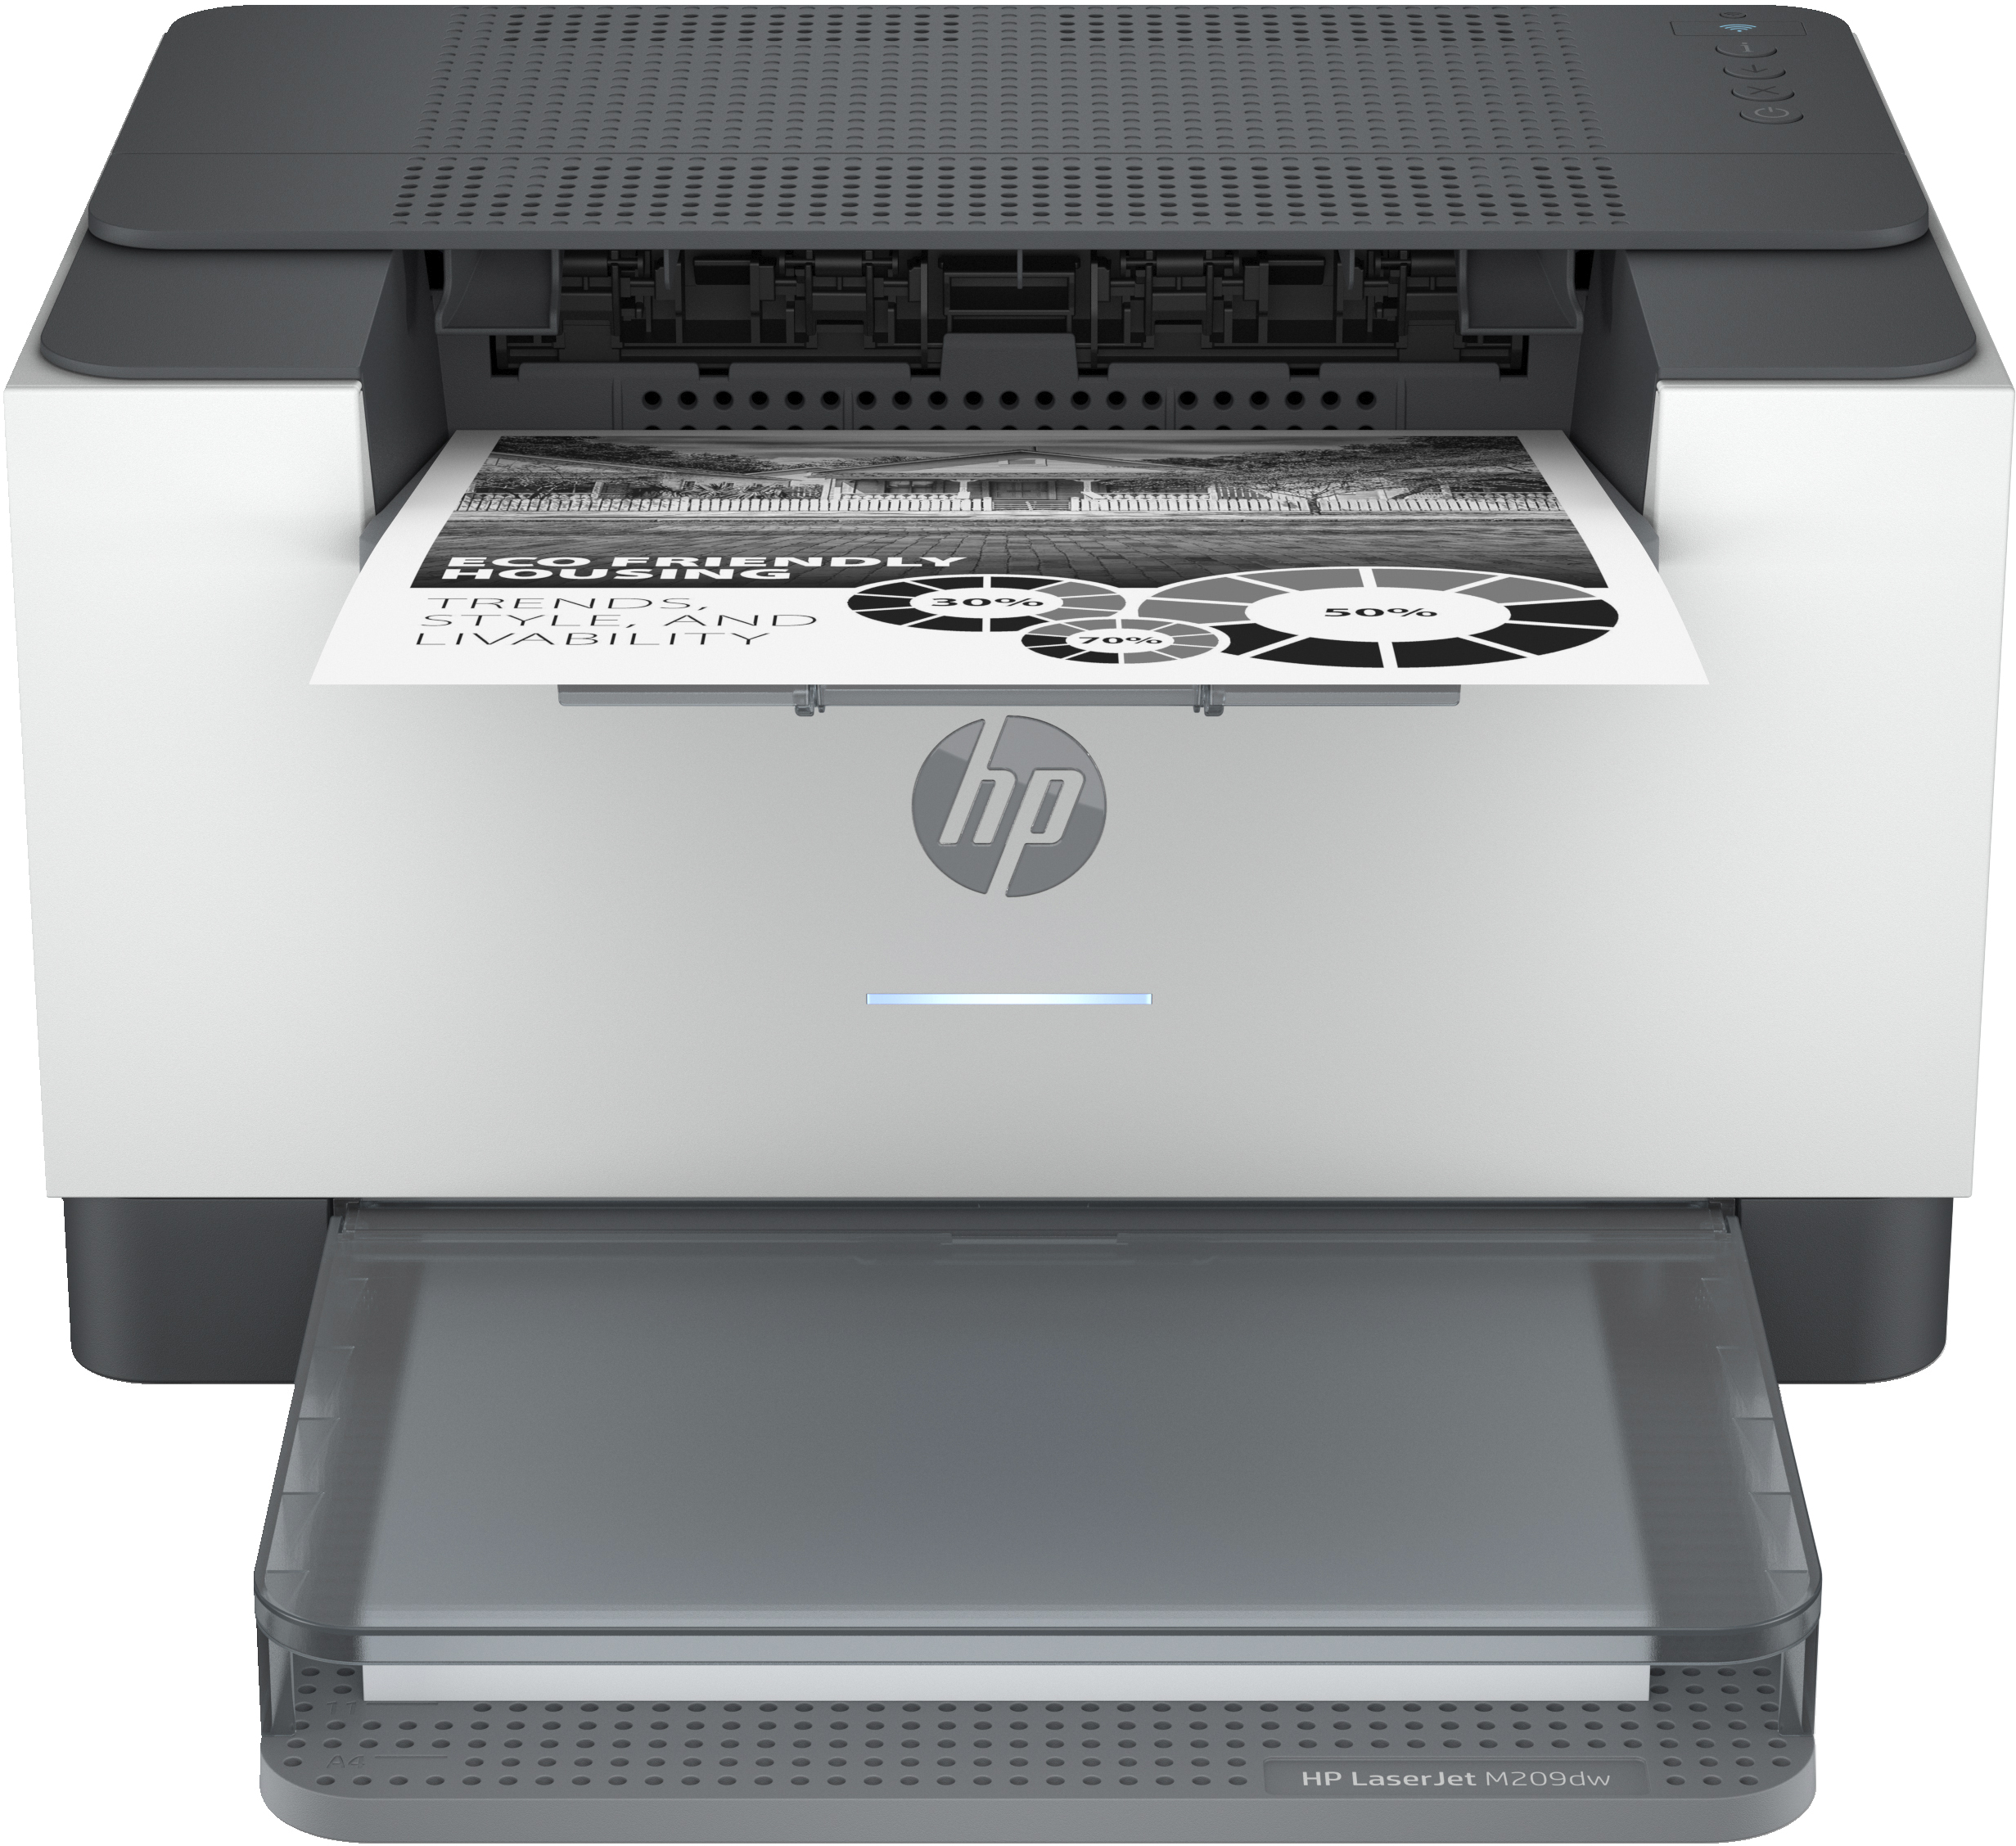 HP LaserJet HP LaserJet M209dw printer, Zwart-wit, Printer voor Thuis en thuiskantoor, Print, Dubbelzijdig printen; Compact formaat; Energiezuinig; Dual-band Wi-Fi